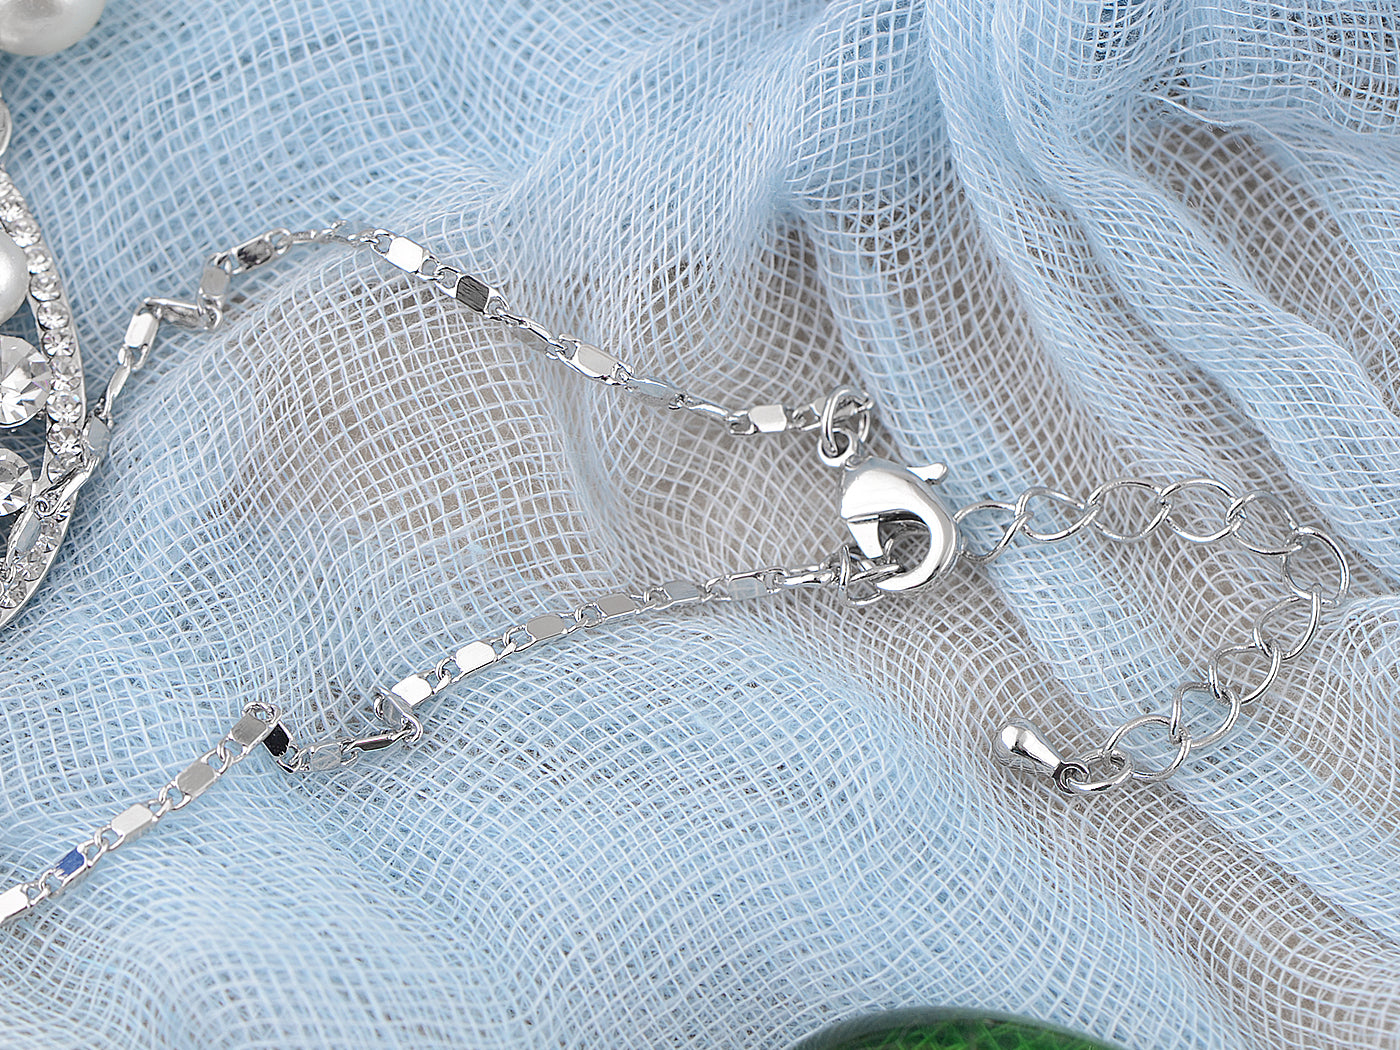 Pearl Element Teardrop Dangle Earring Necklace Set